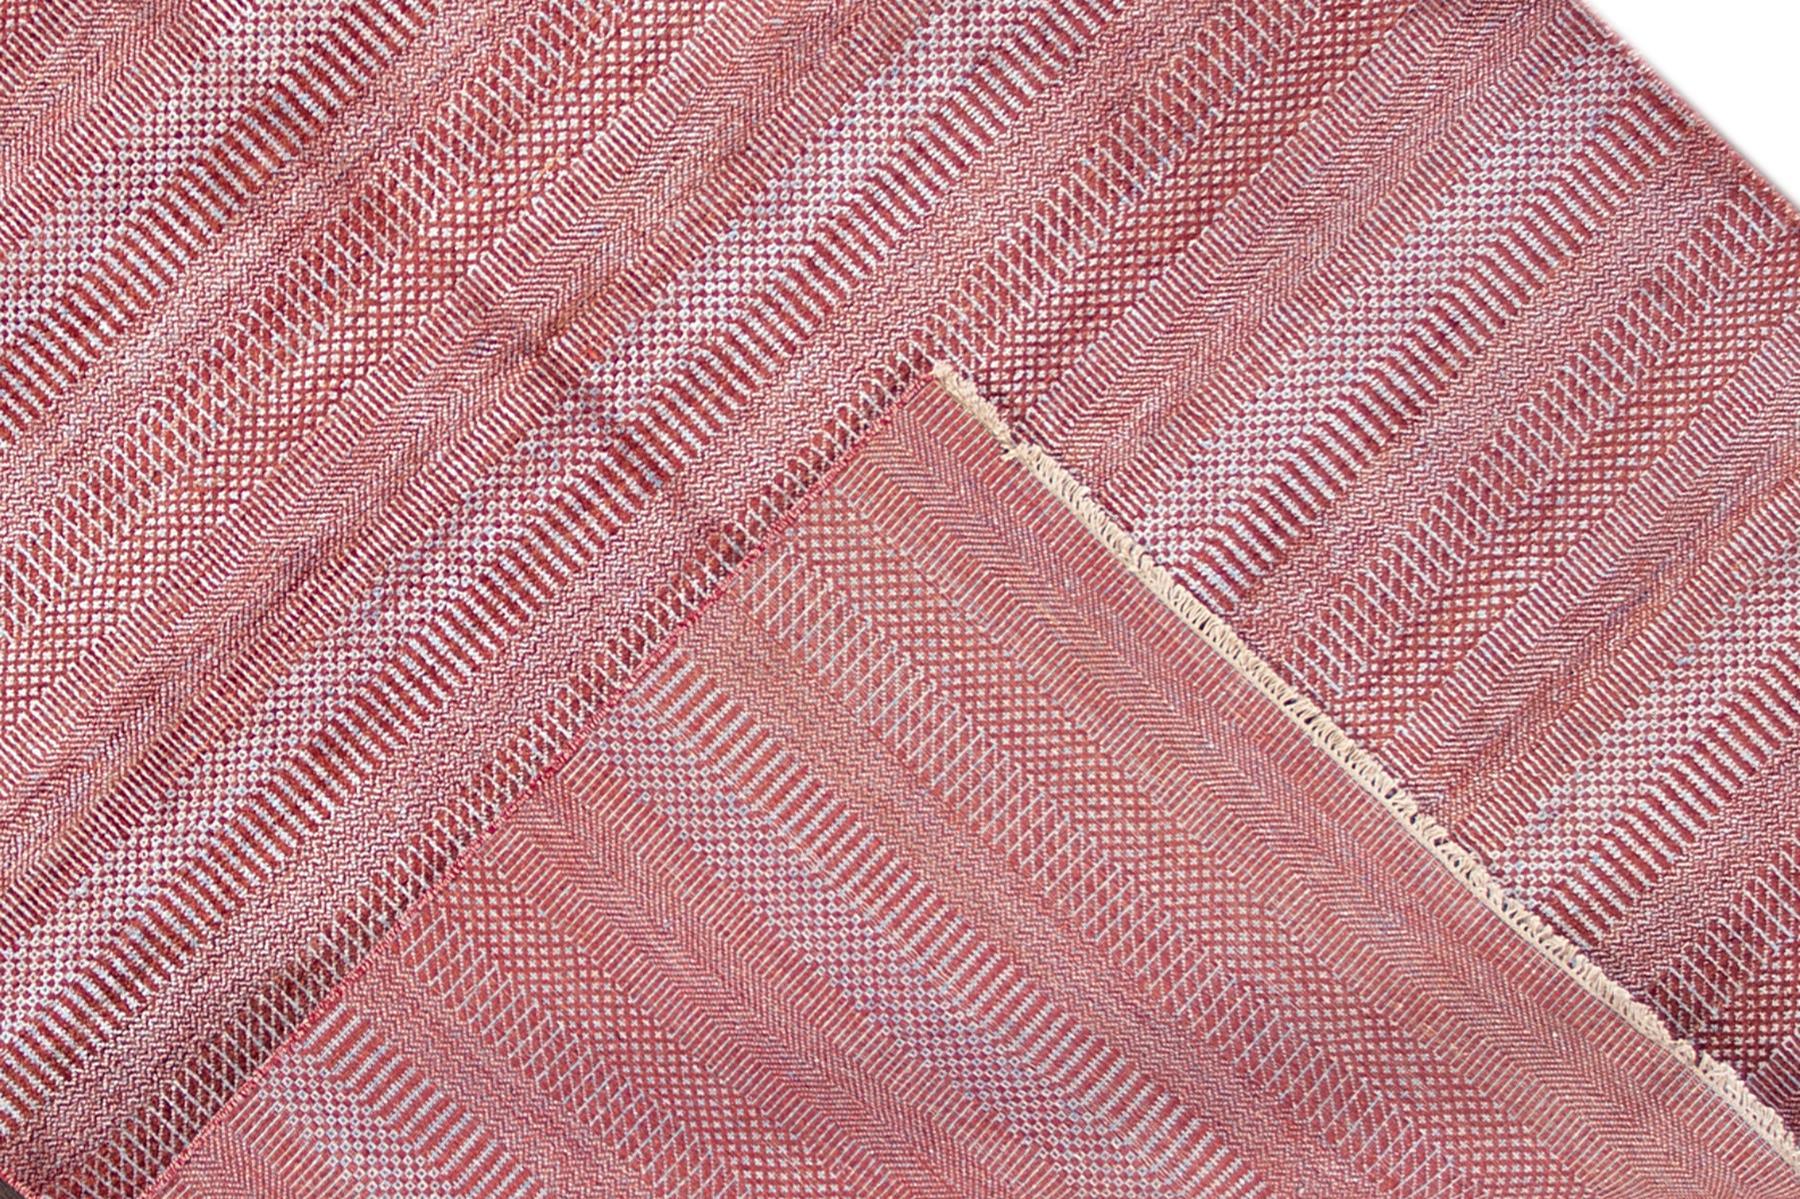 zeitgenössischer Savannah-Teppich des 21. Jahrhunderts mit einem einfarbigen roten Motiv. Dieses Stück hat feine Details, tolle Farben und ein schönes Design. Es wäre die perfekte Ergänzung für Ihr Zuhause. Dieser Teppich misst 6' x 9'2